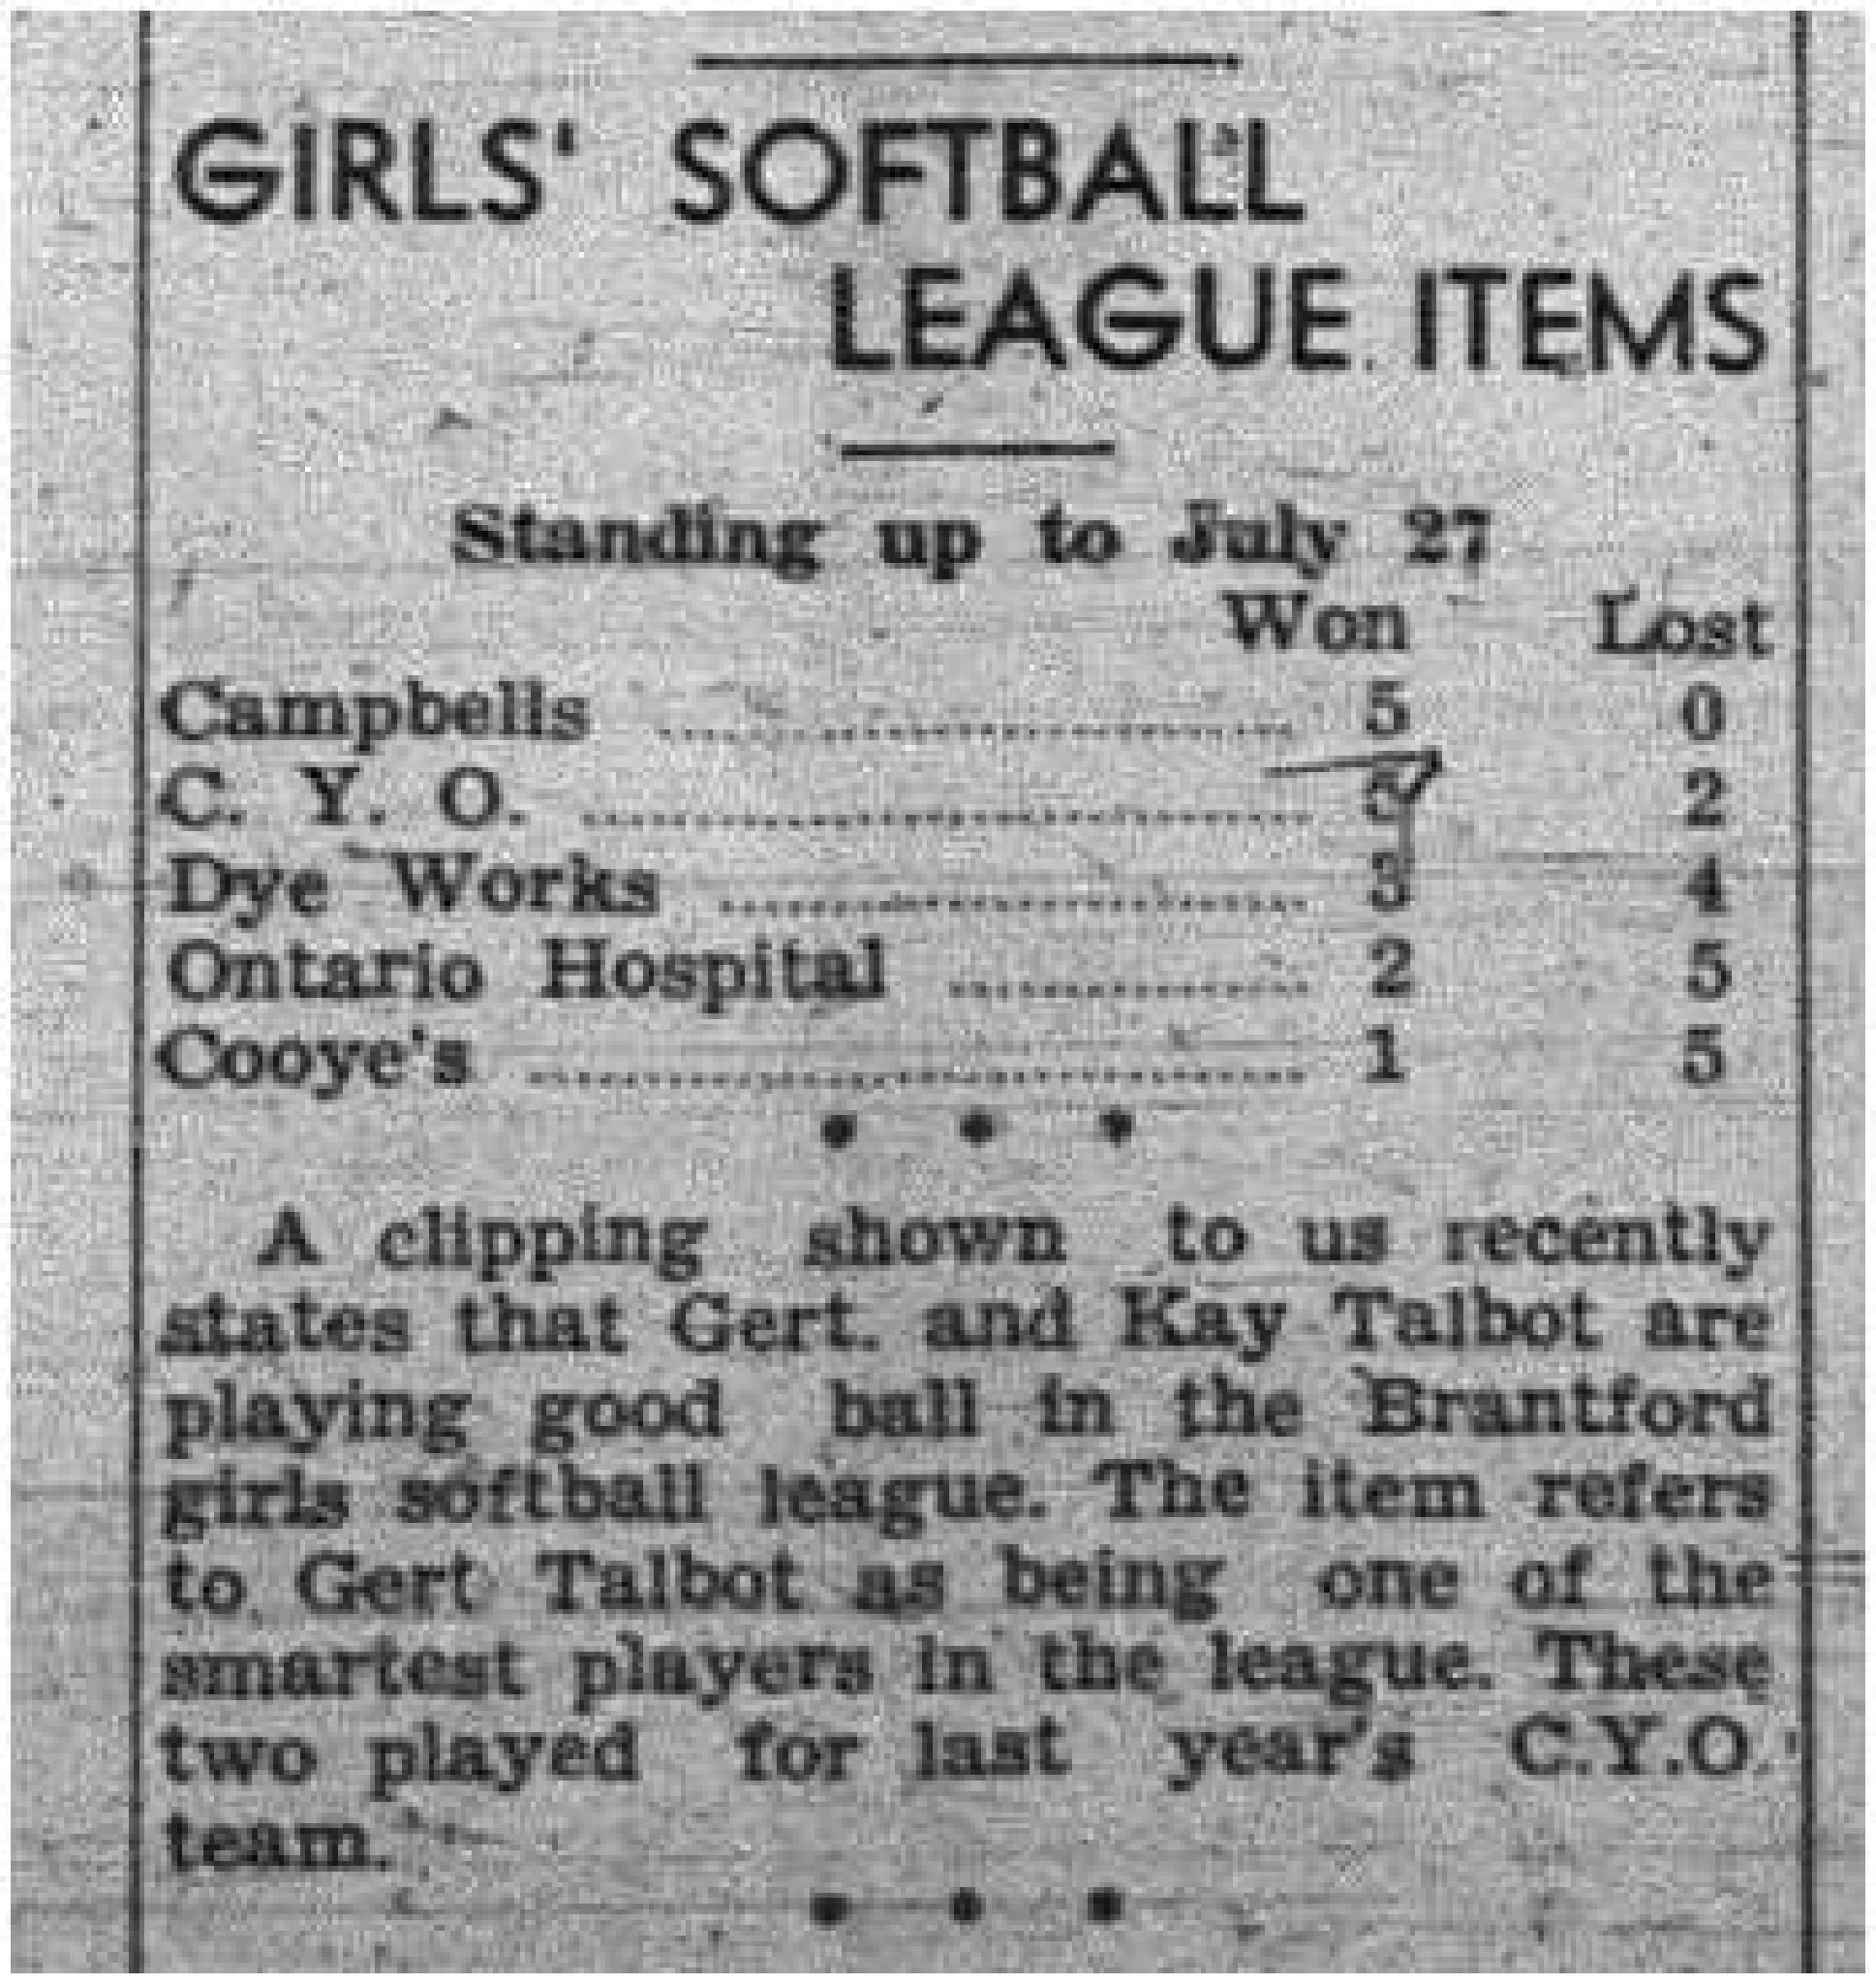 1943-07-29 Softball - Girls League standings